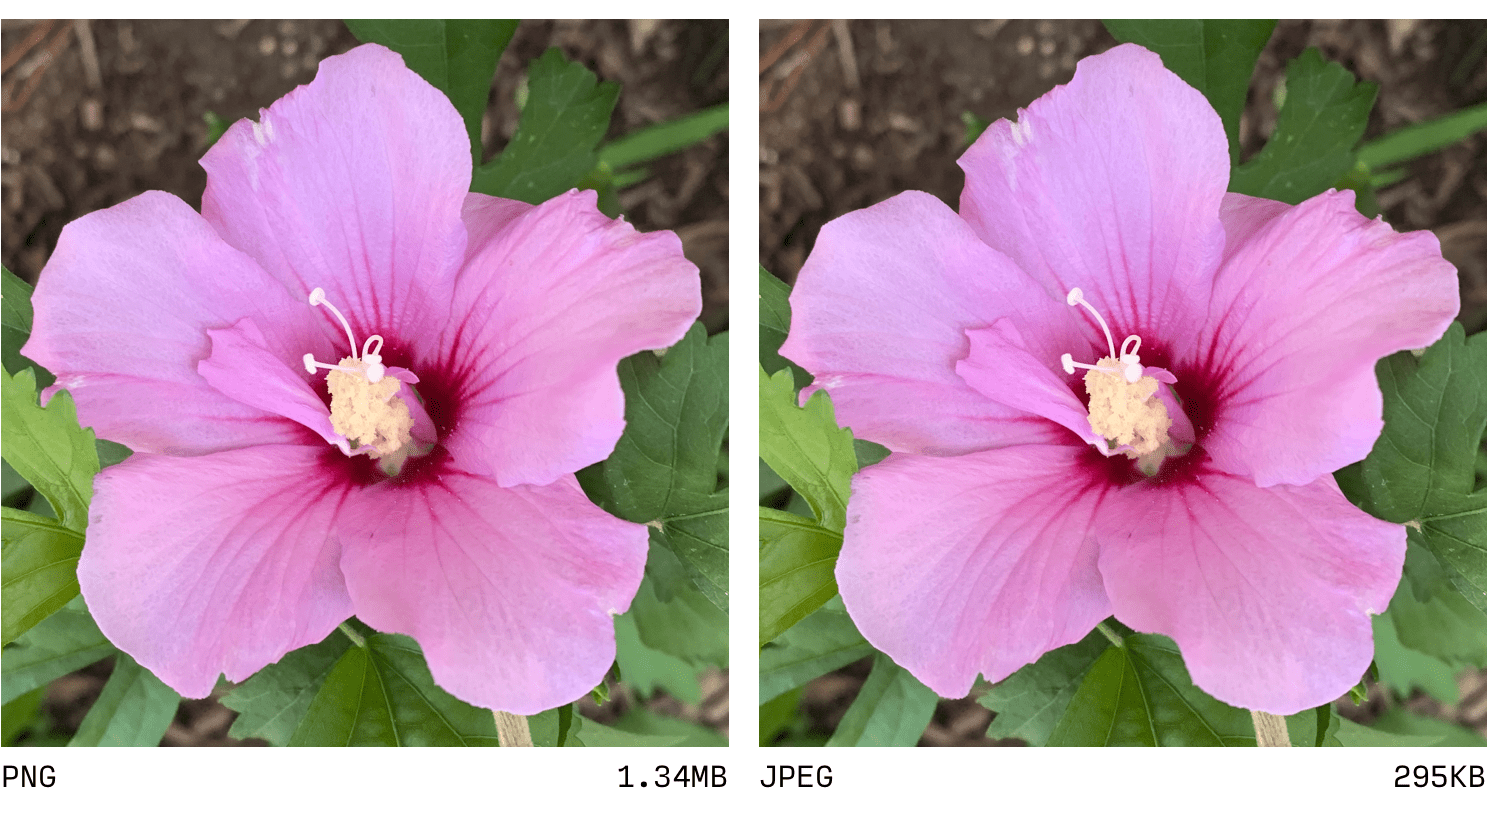 การเปรียบเทียบ JPEG และ PNG